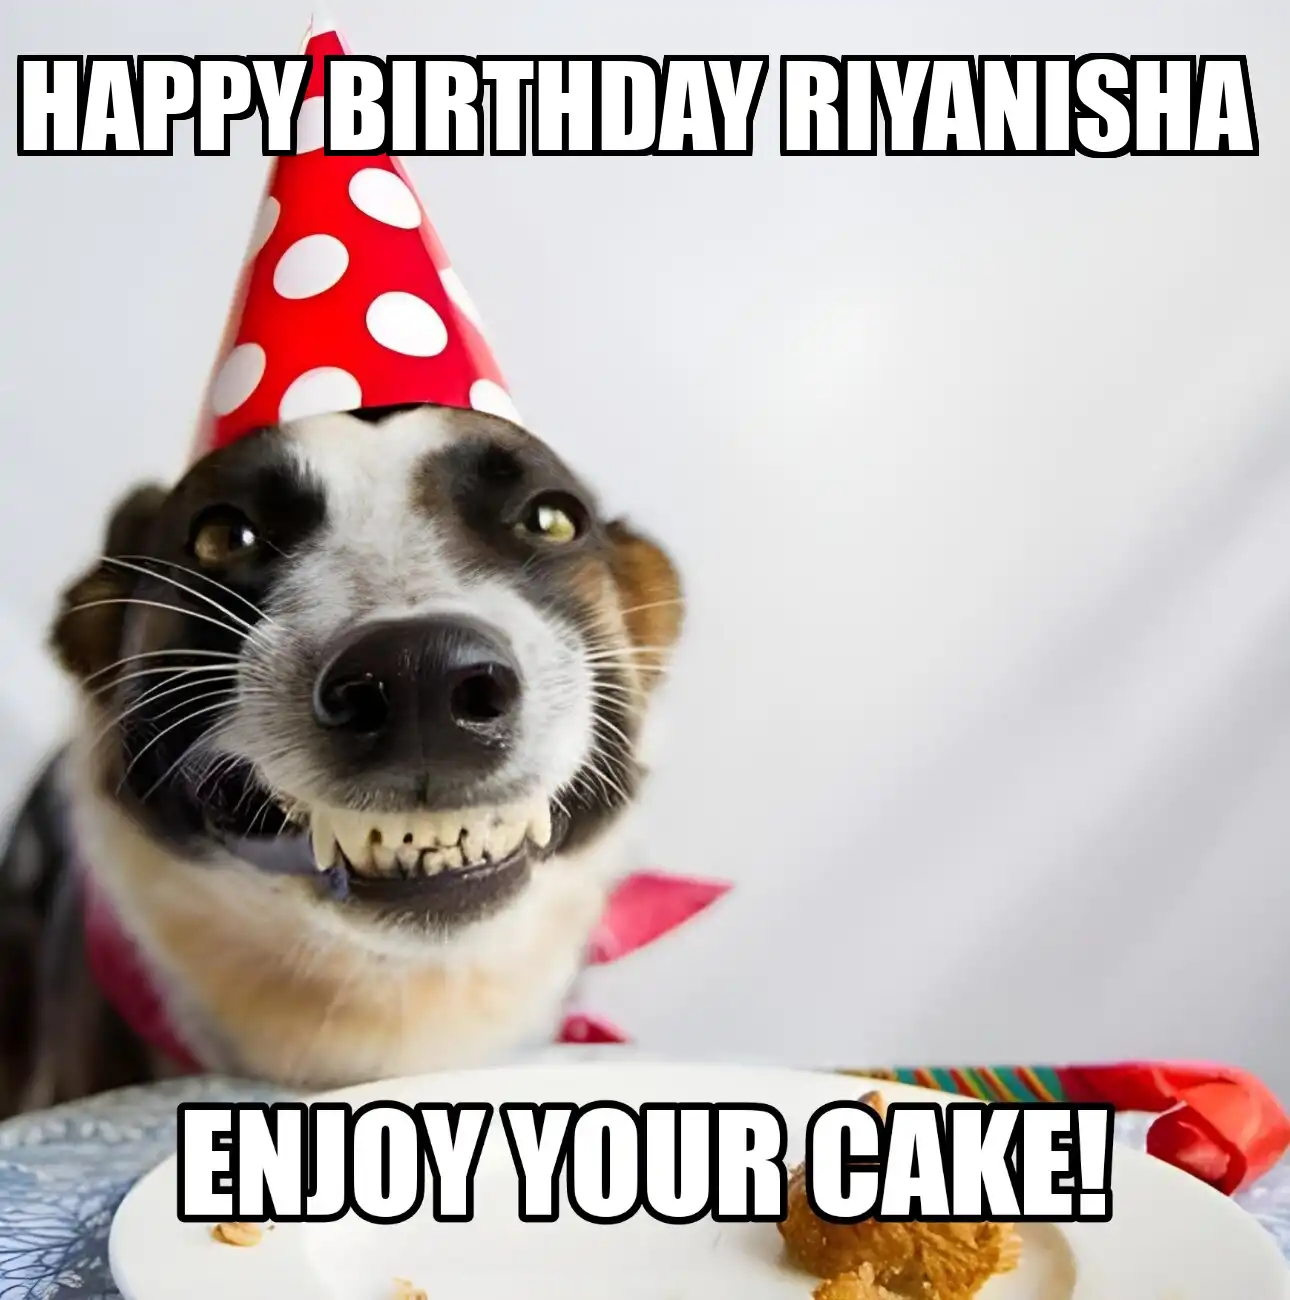 Happy Birthday Riyanisha Enjoy Your Cake Dog Meme